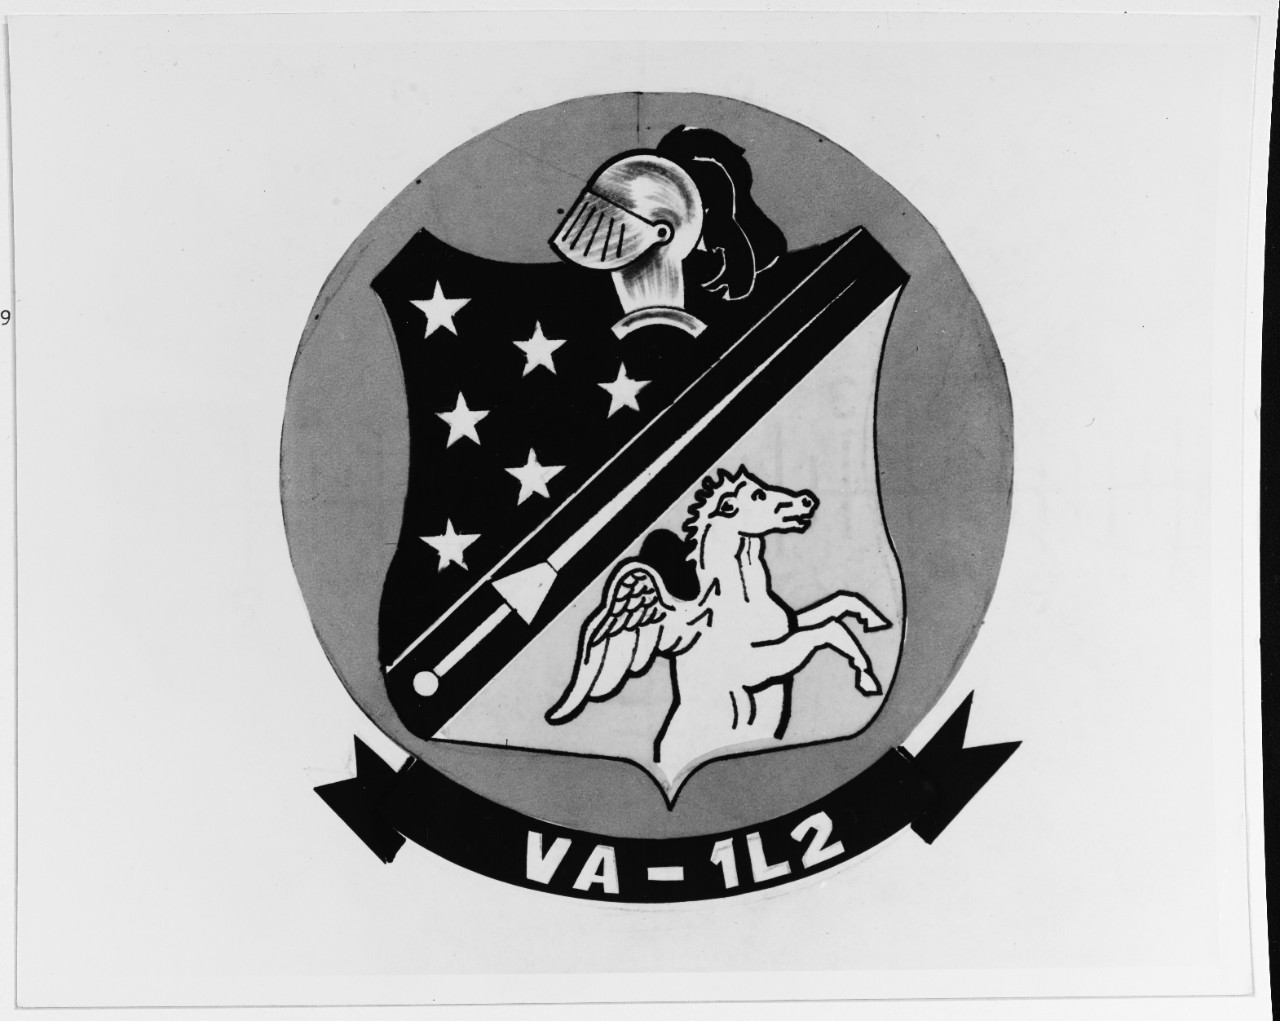 Insignia: Reserve Attack Squadron One L-2 (VA-1 L2)